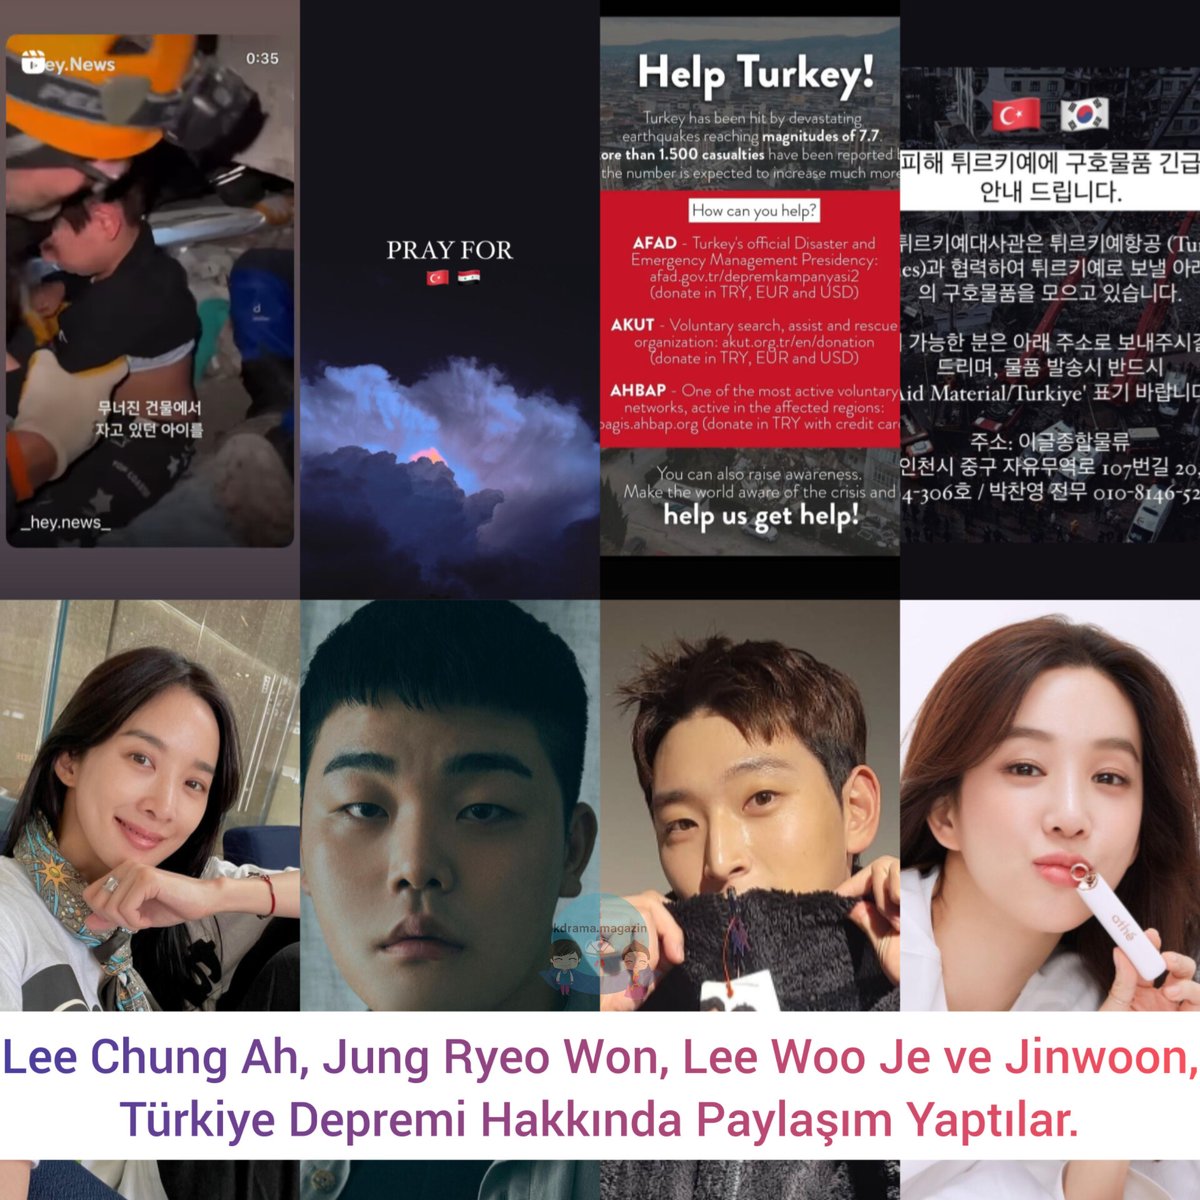 #LeeChungAh, #JungRyeoWon, #LeeWooJe ve #Jinwoon, Türkiye Depremi Hakkında Paylaşım Yaptılar.